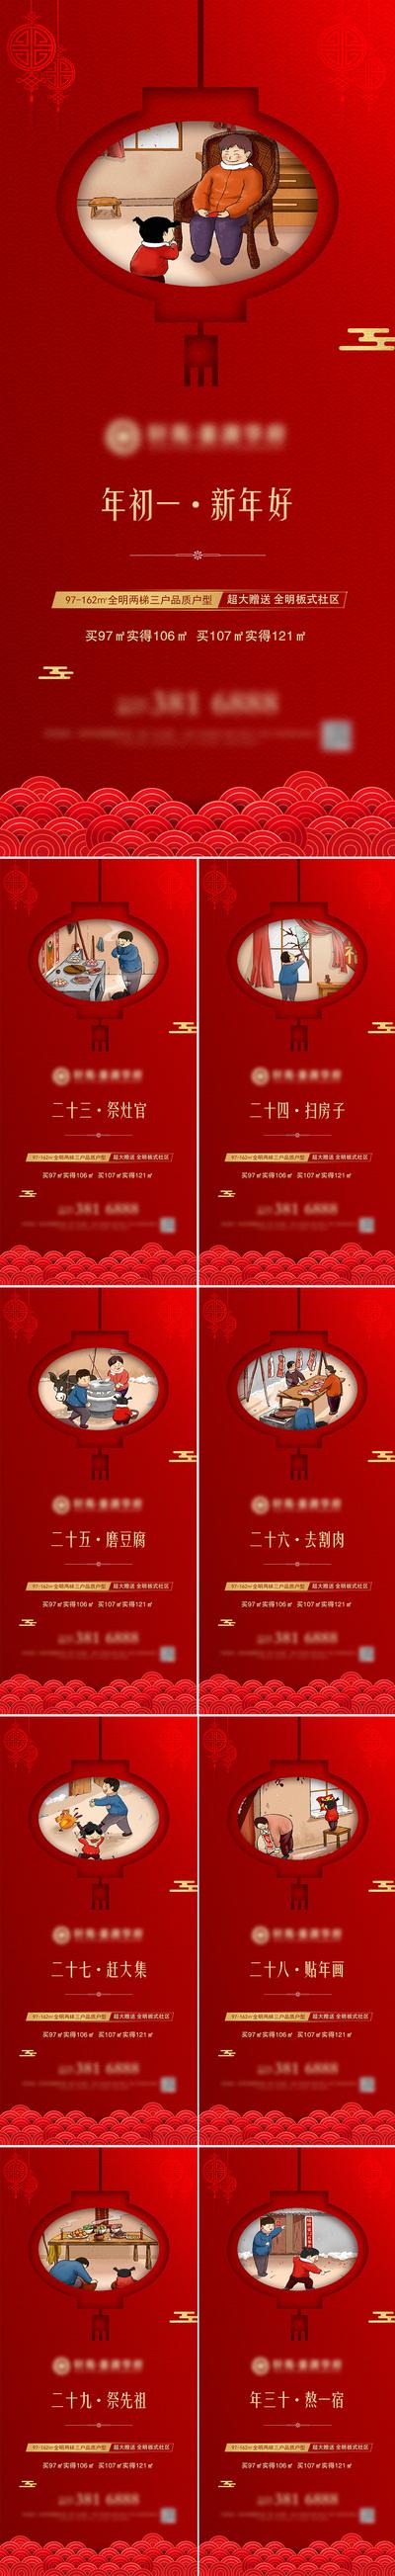 南门网 海报 中国传统节日 新年 春节 正月 腊月 年俗 过年 初一  插画  灯笼 祥云 红色 系列